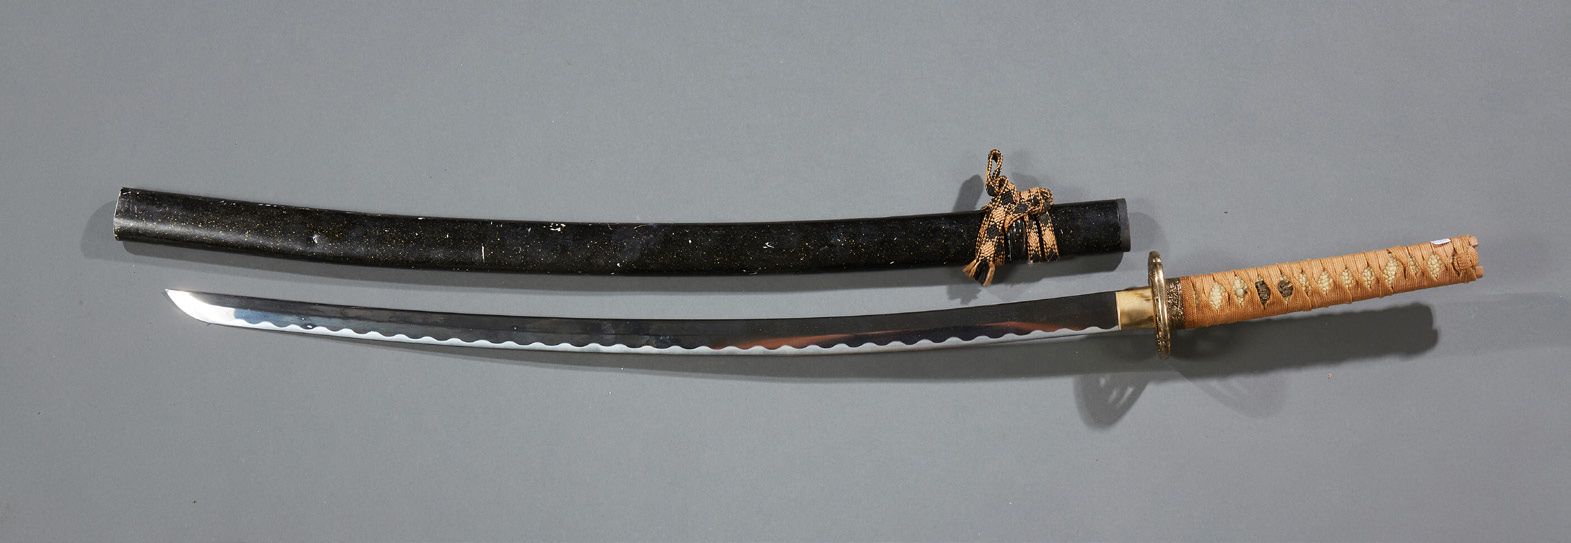 JAPON Espada con hoja de acero y mango de raya. Vaina de madera lacada.
Obra mod&hellip;